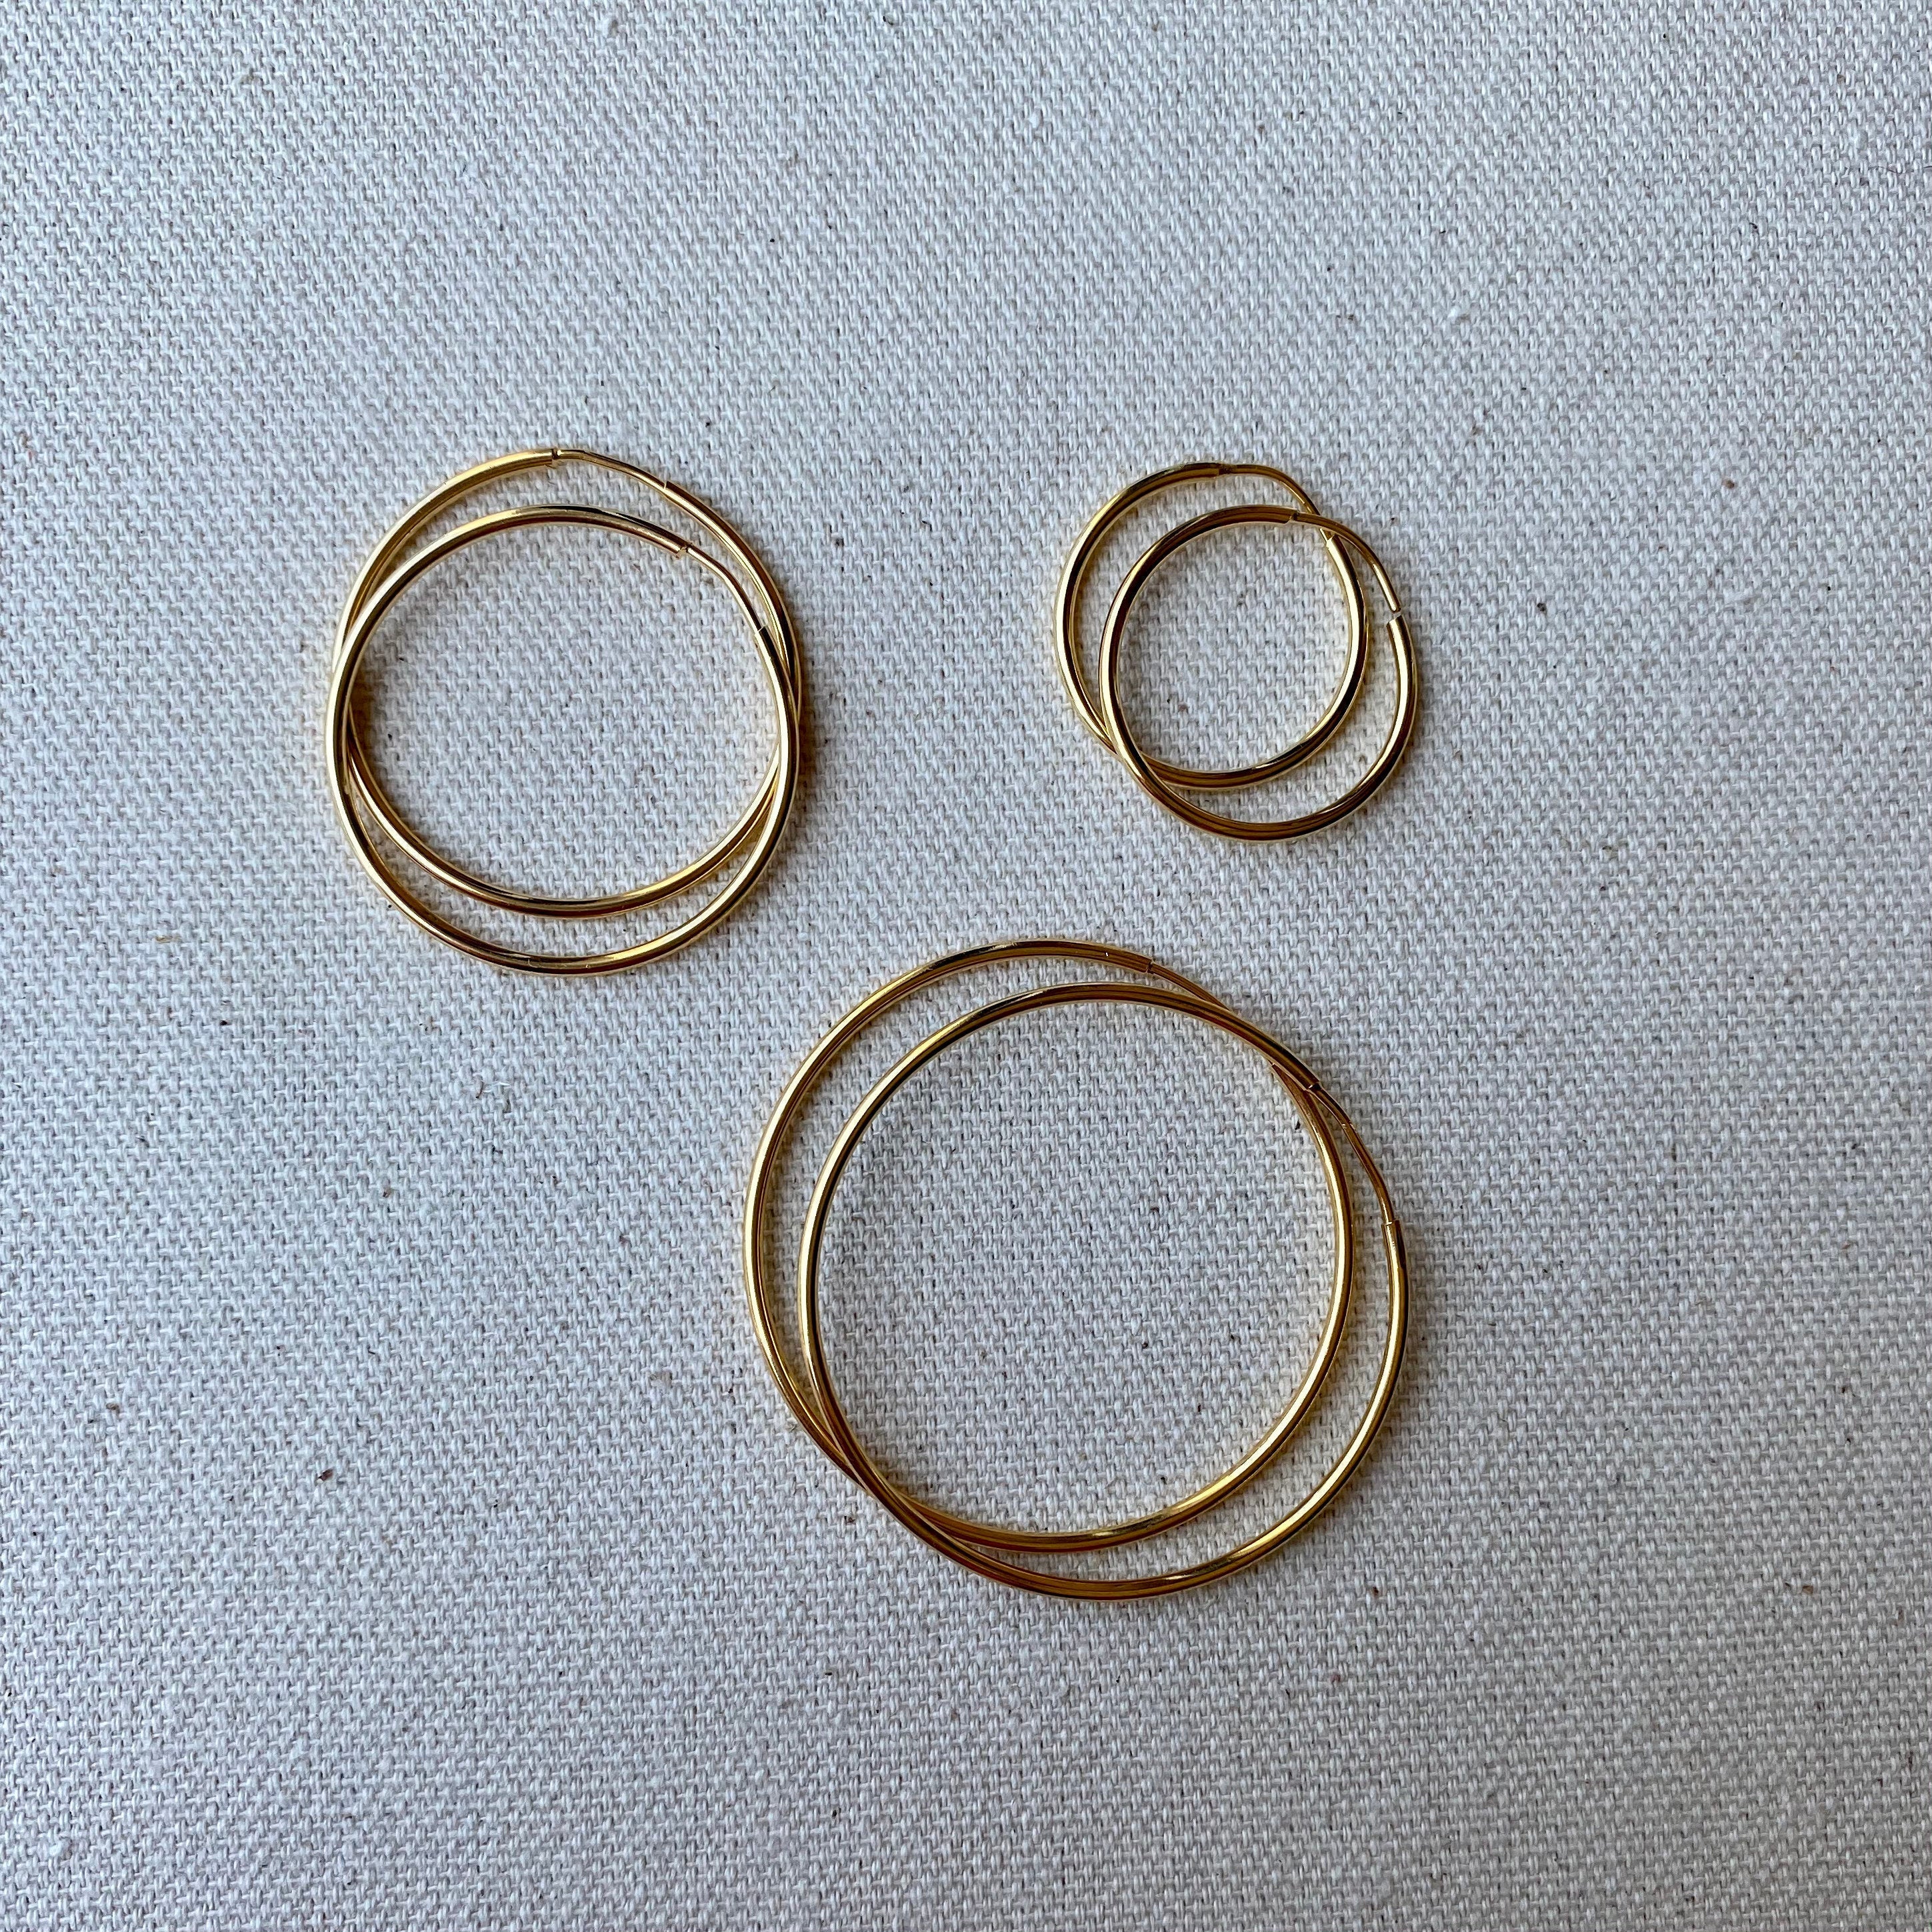 Gold Hoop Earring, 14K Gold Filled Hoop Earring One Pair Hoop Earring Sizes  30mm 35mm 40mm 50mm 60mm 70mm Every Day Hoop Earring Lightweight - DLUXCA